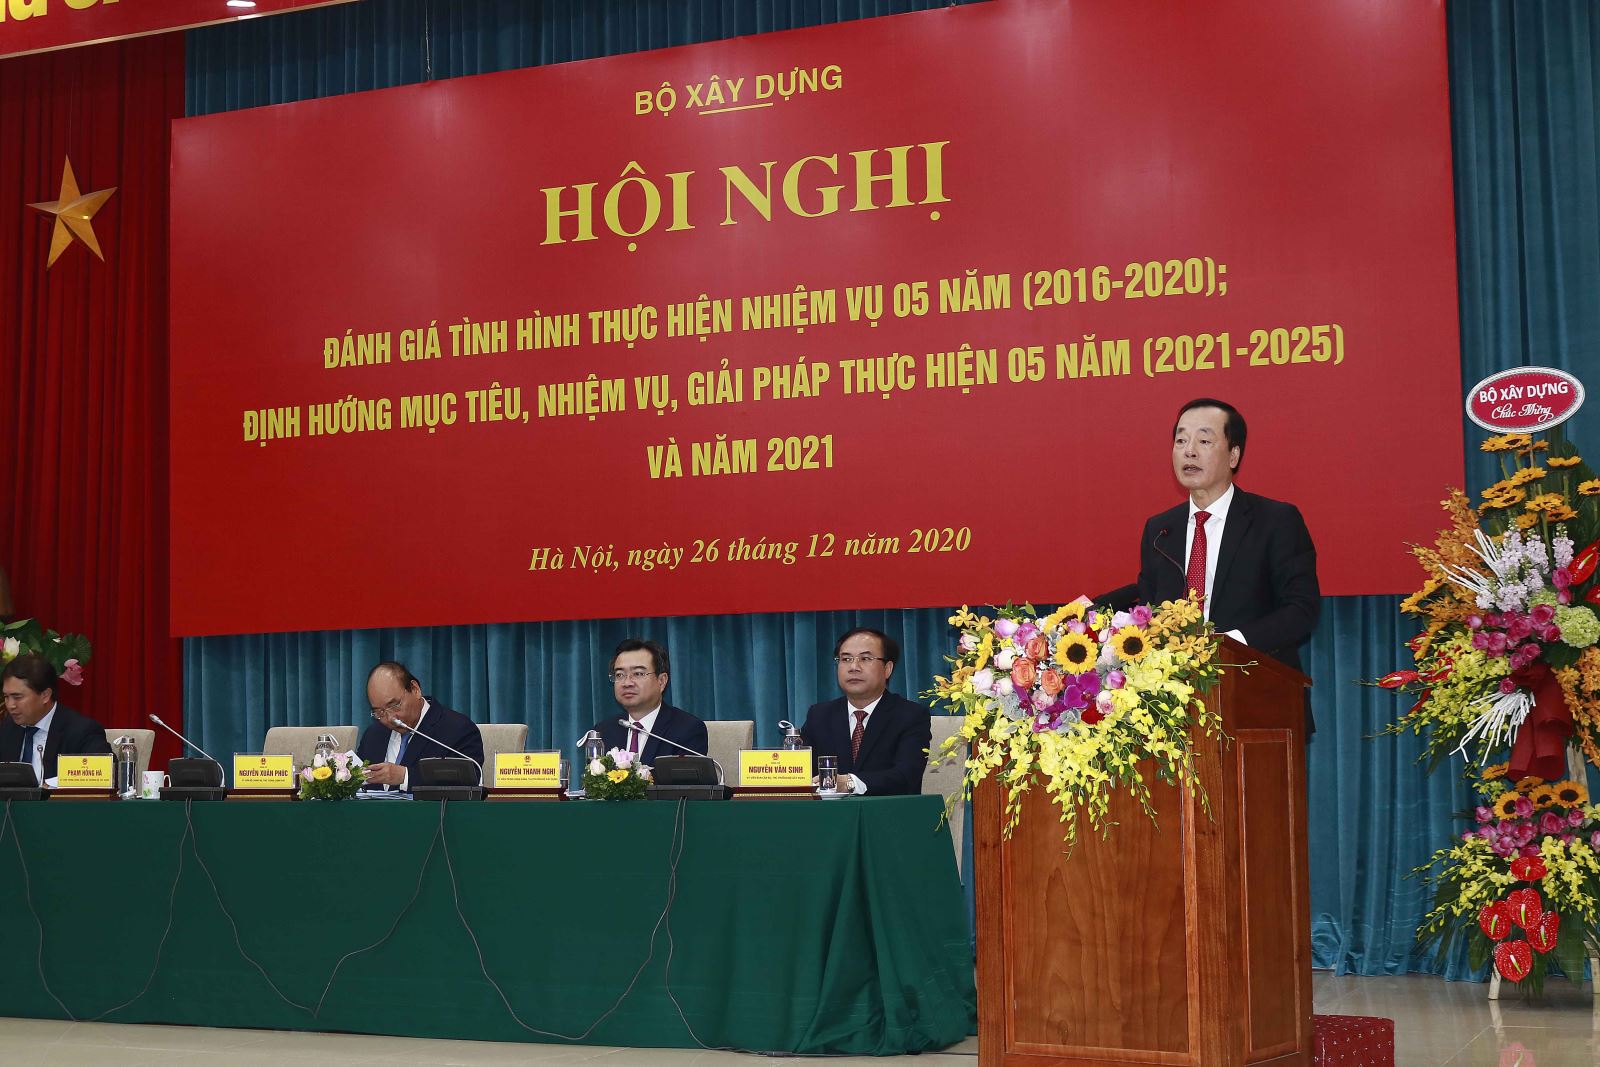 Bộ trưởng Bộ Xây dựng Phạm Hồng Hà phát biểu tại Hội nghị